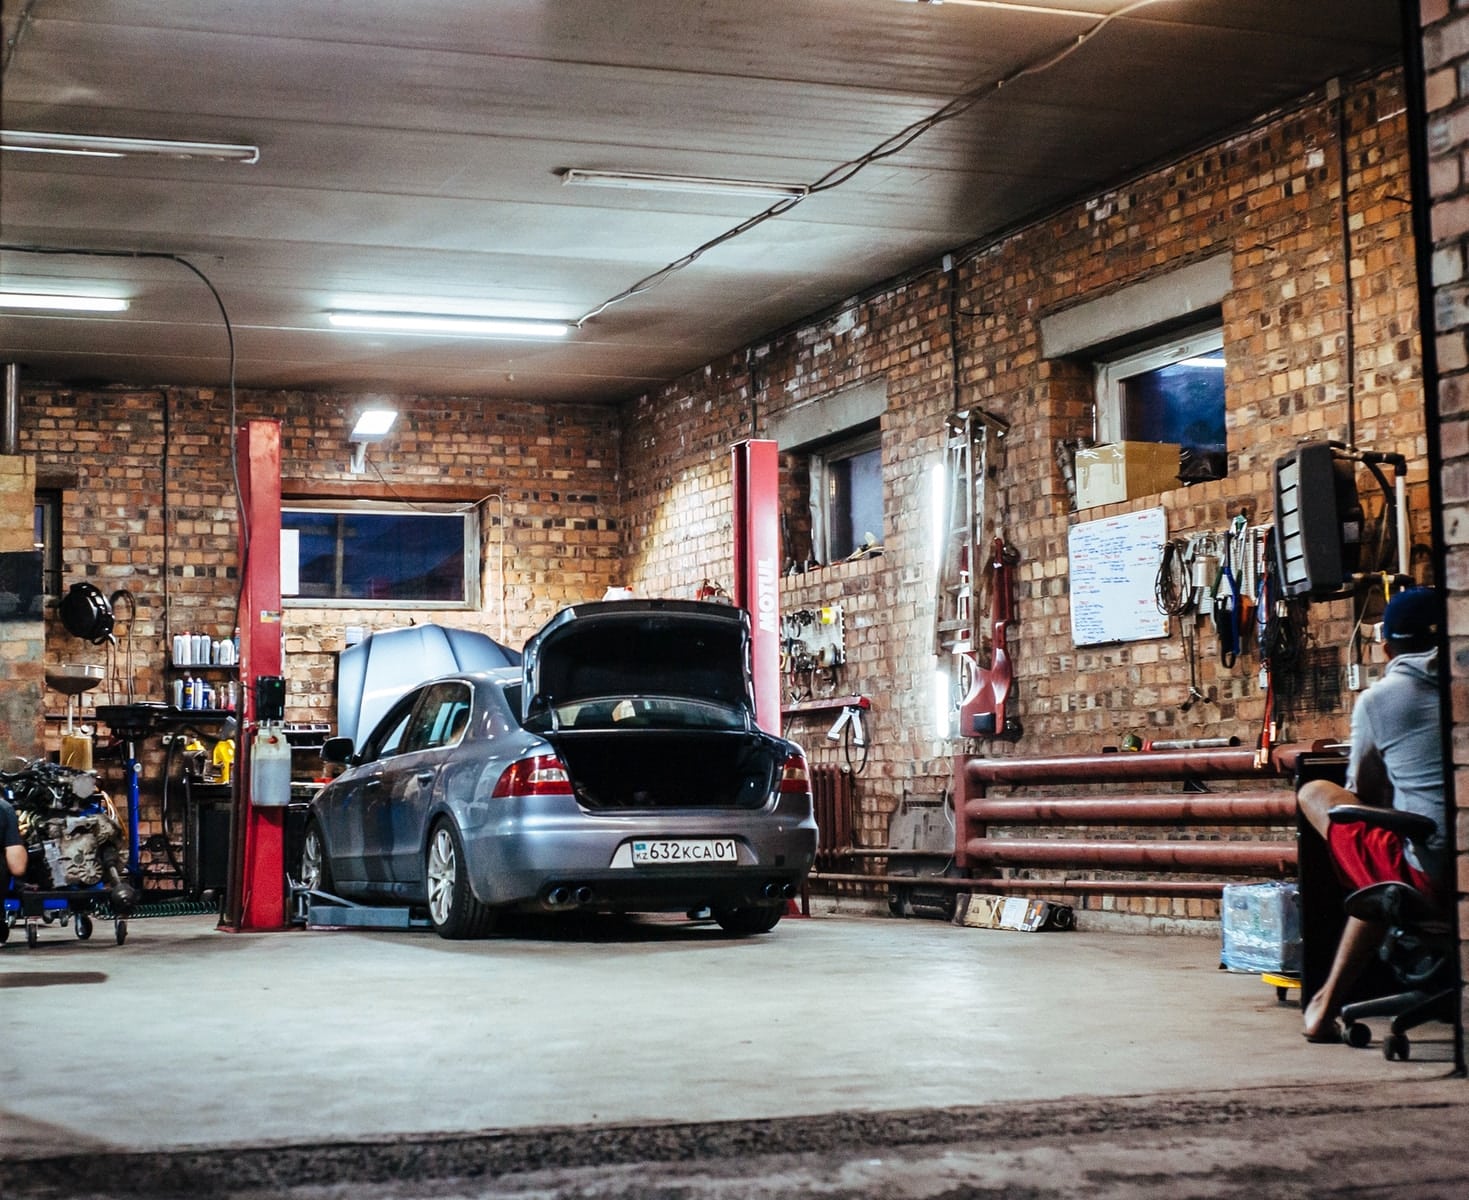 Comment ouvrir un garage d'entretien et de réparation de véhicules ?